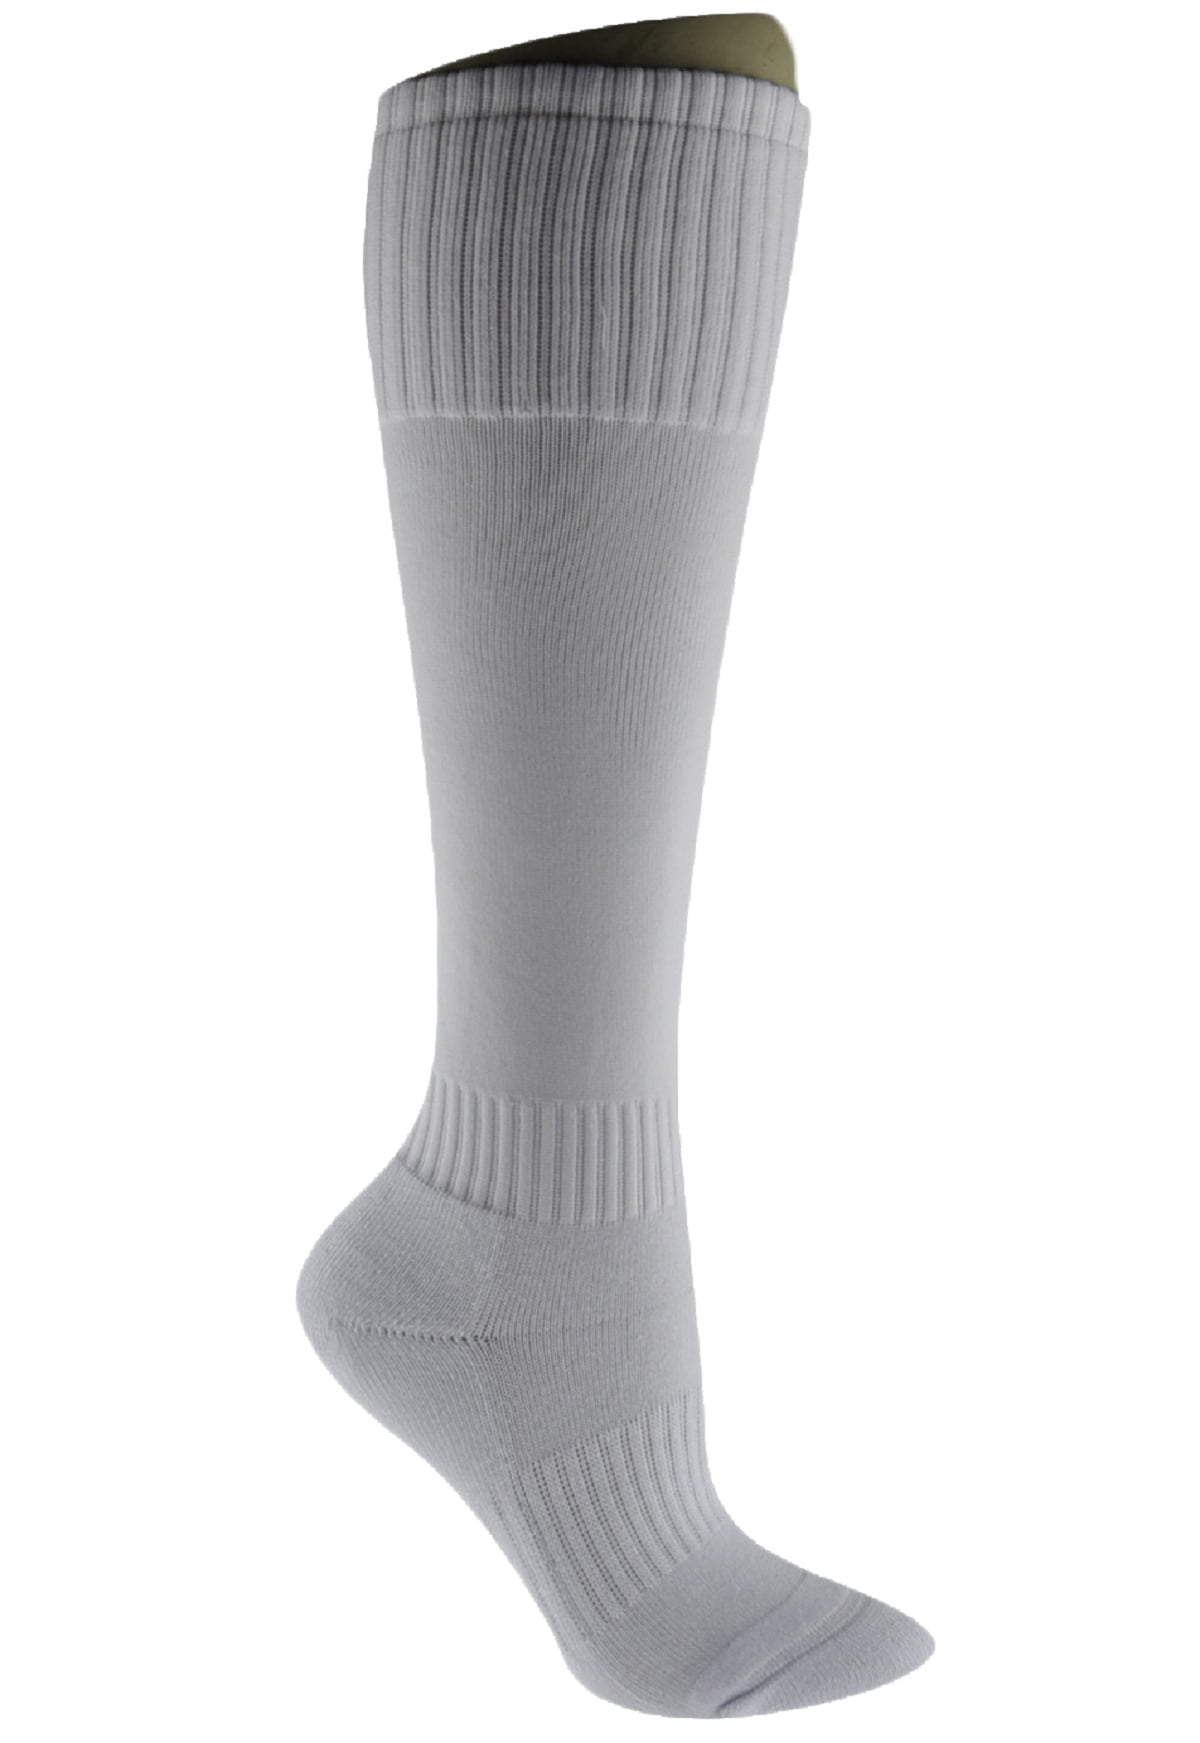 plain white sports socks